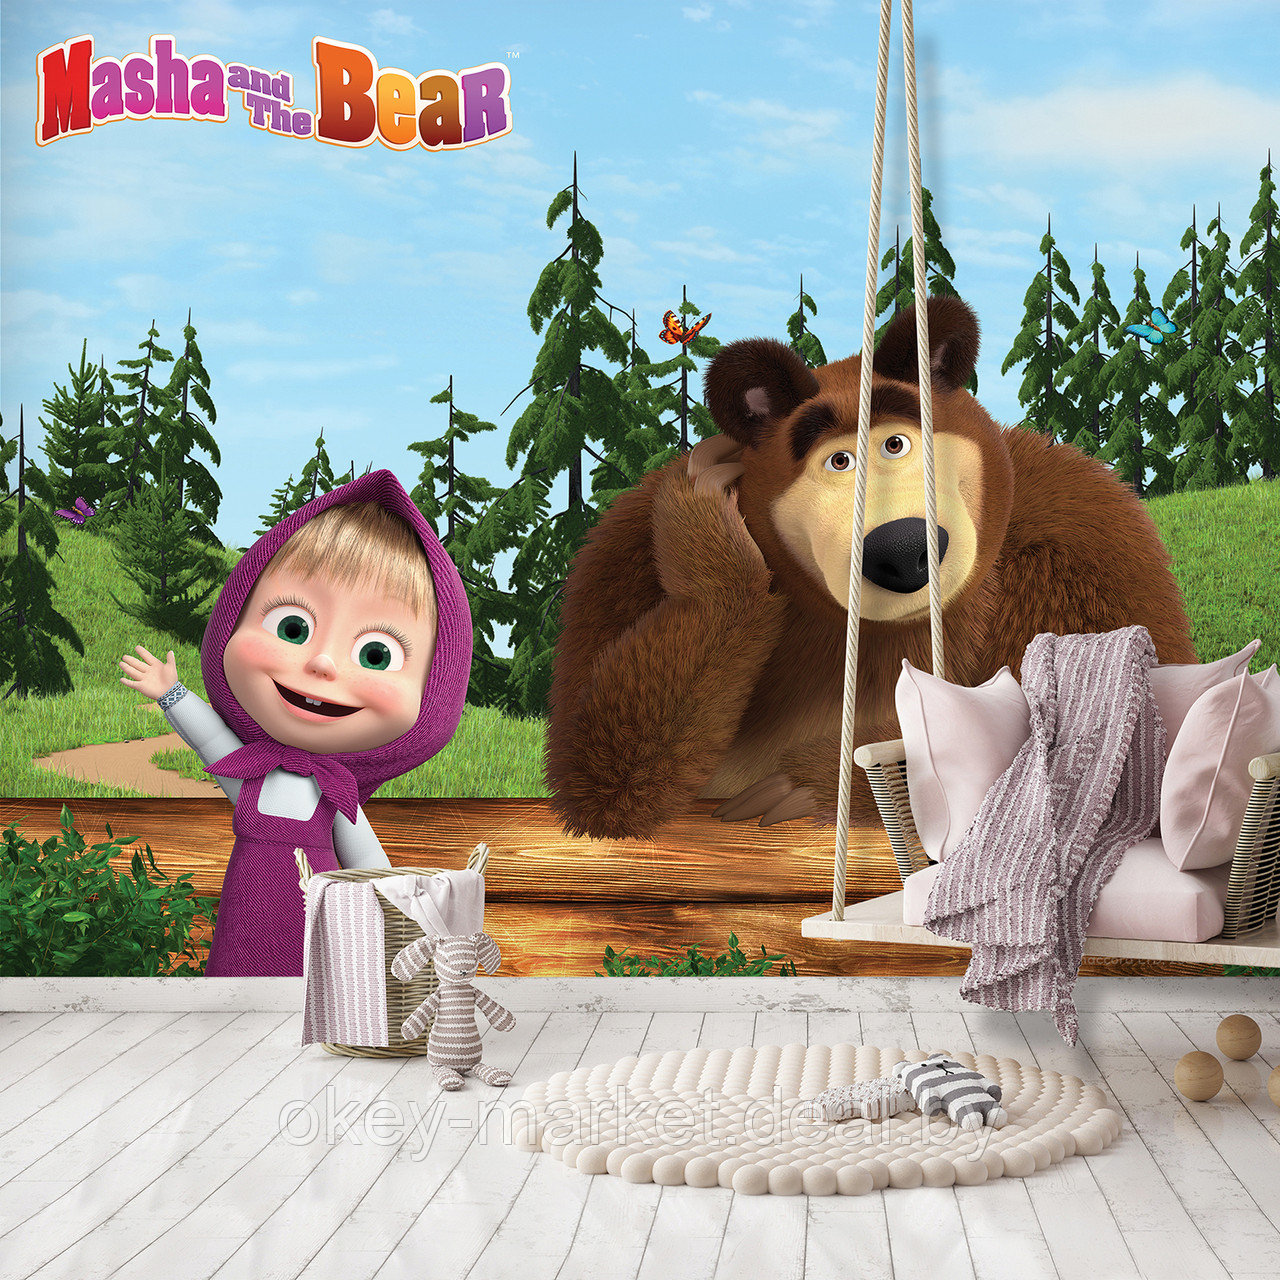 Фотообои Маша и Медведь для детской комнаты рис.13663